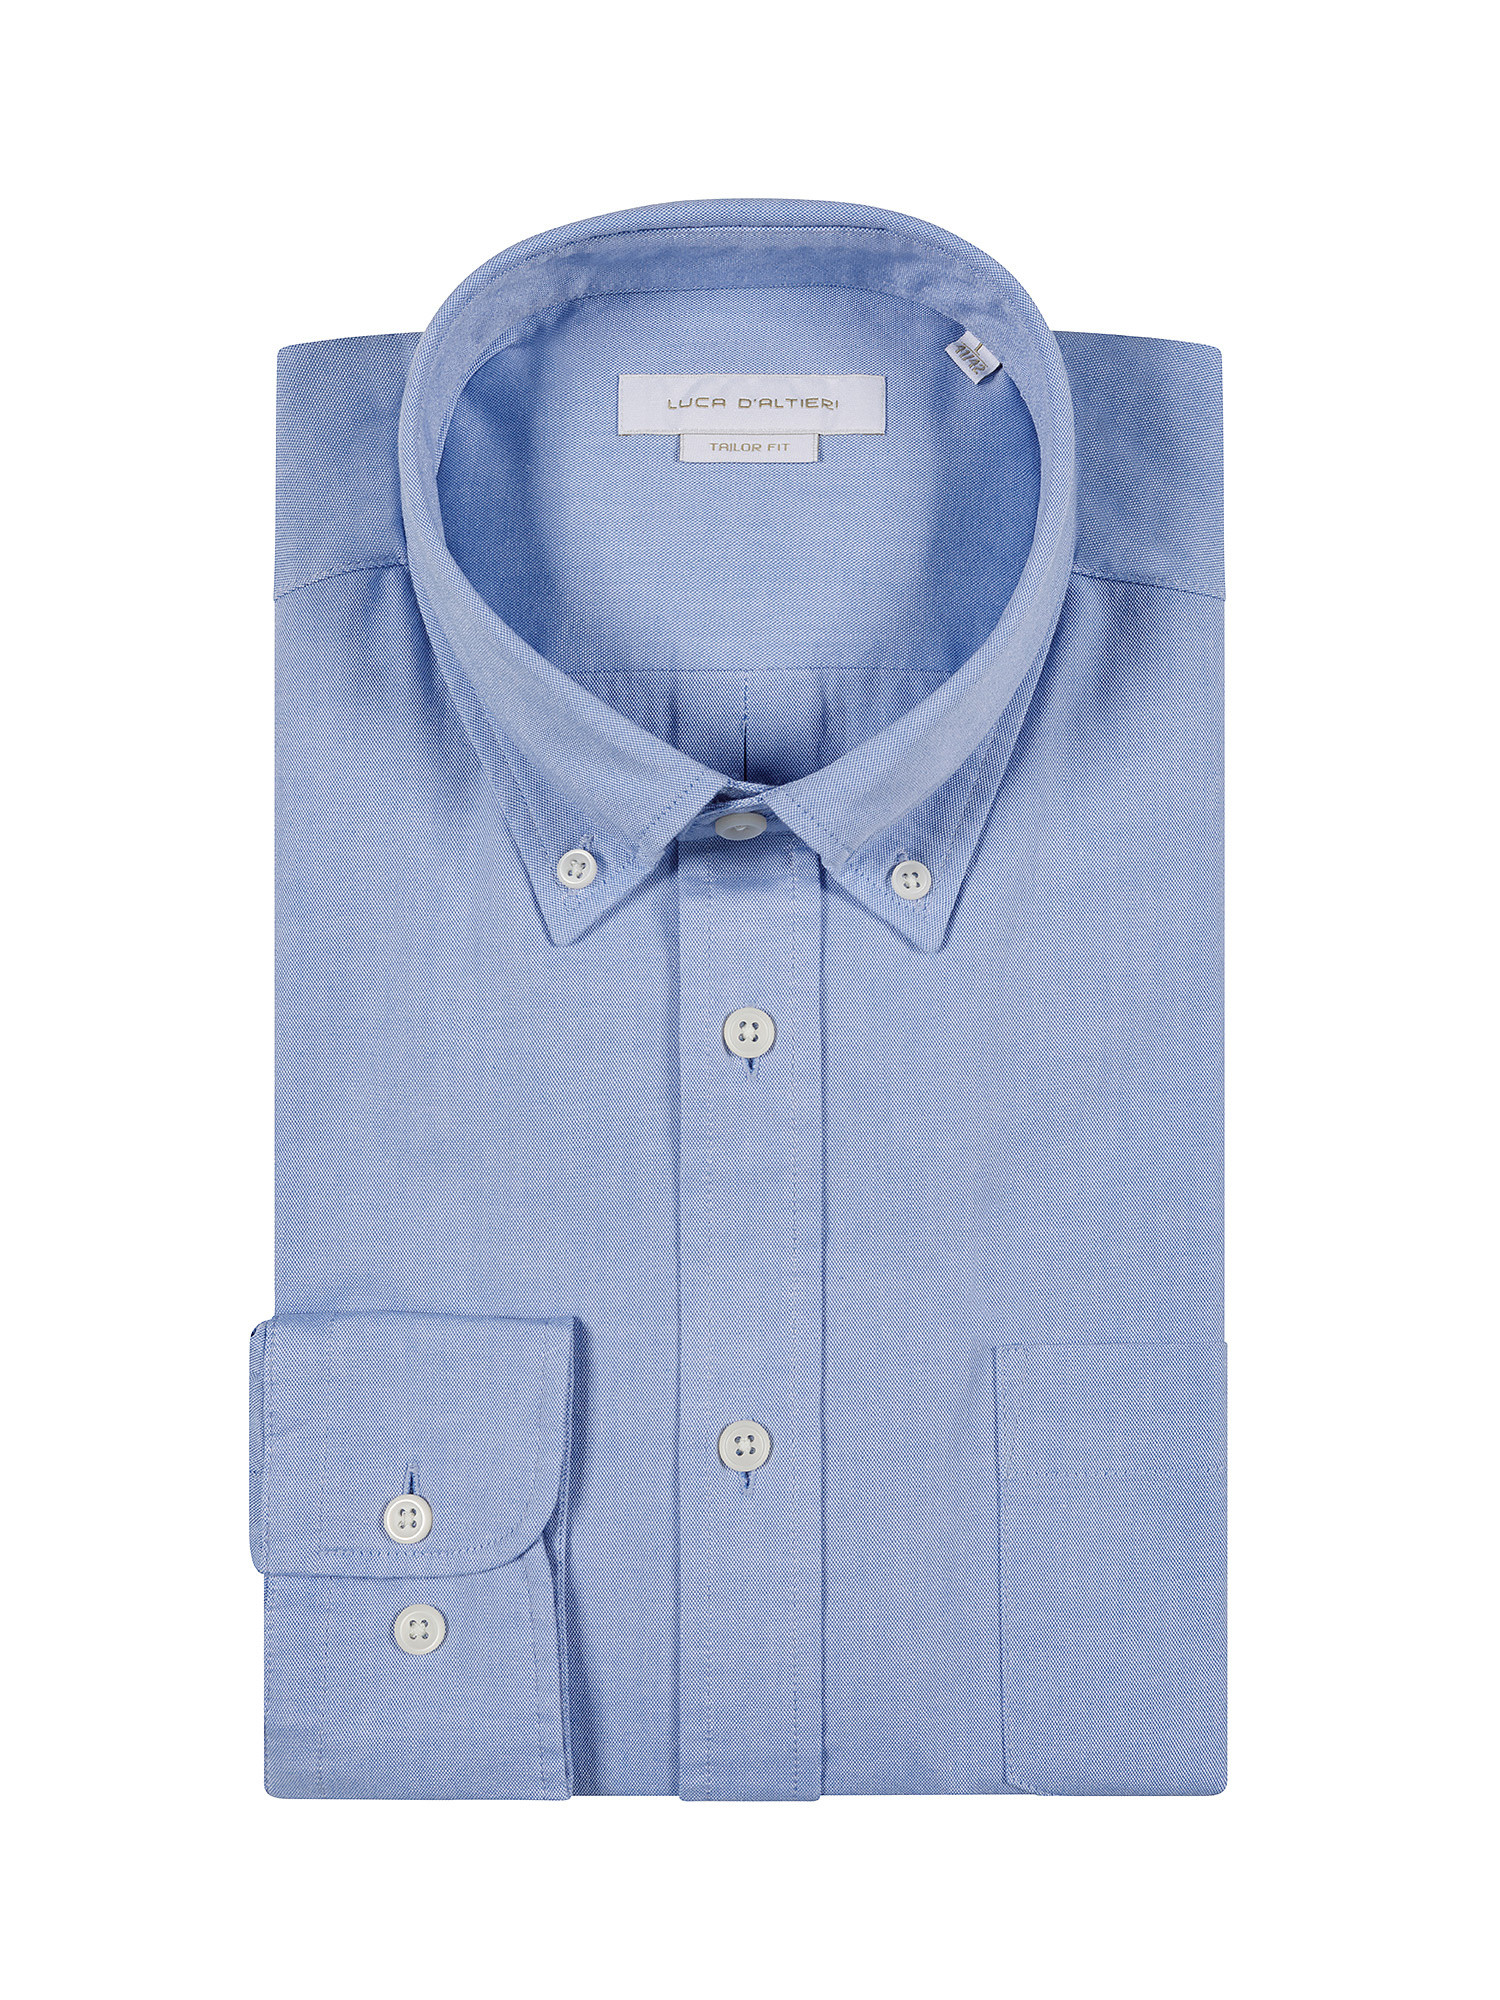 Camicia tailor fit in tessuto Oxford, Azzurro, large